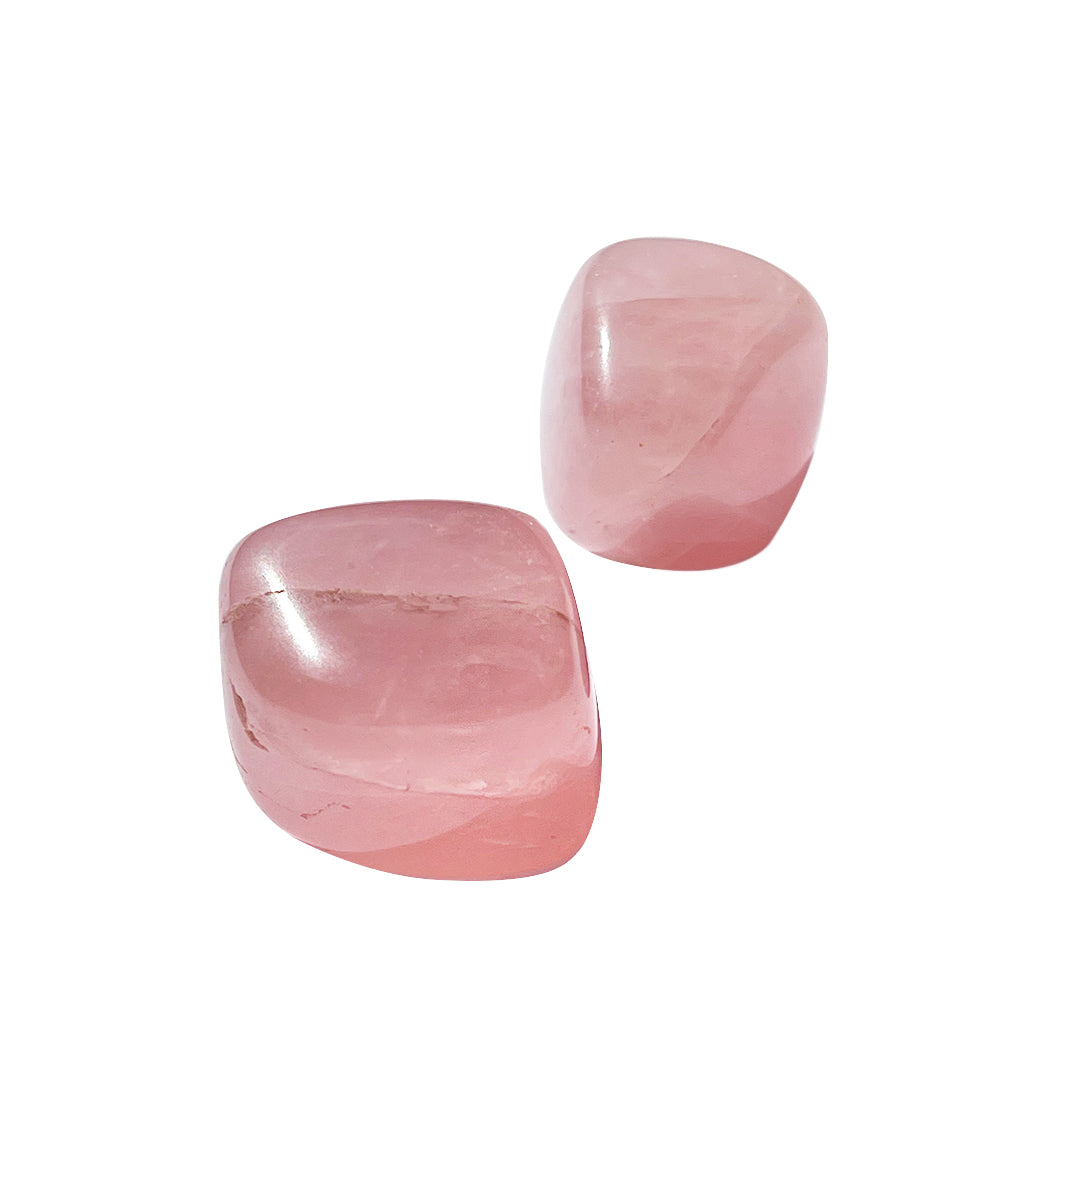 Rose Quartz Tumble Stones - The Deva Shop